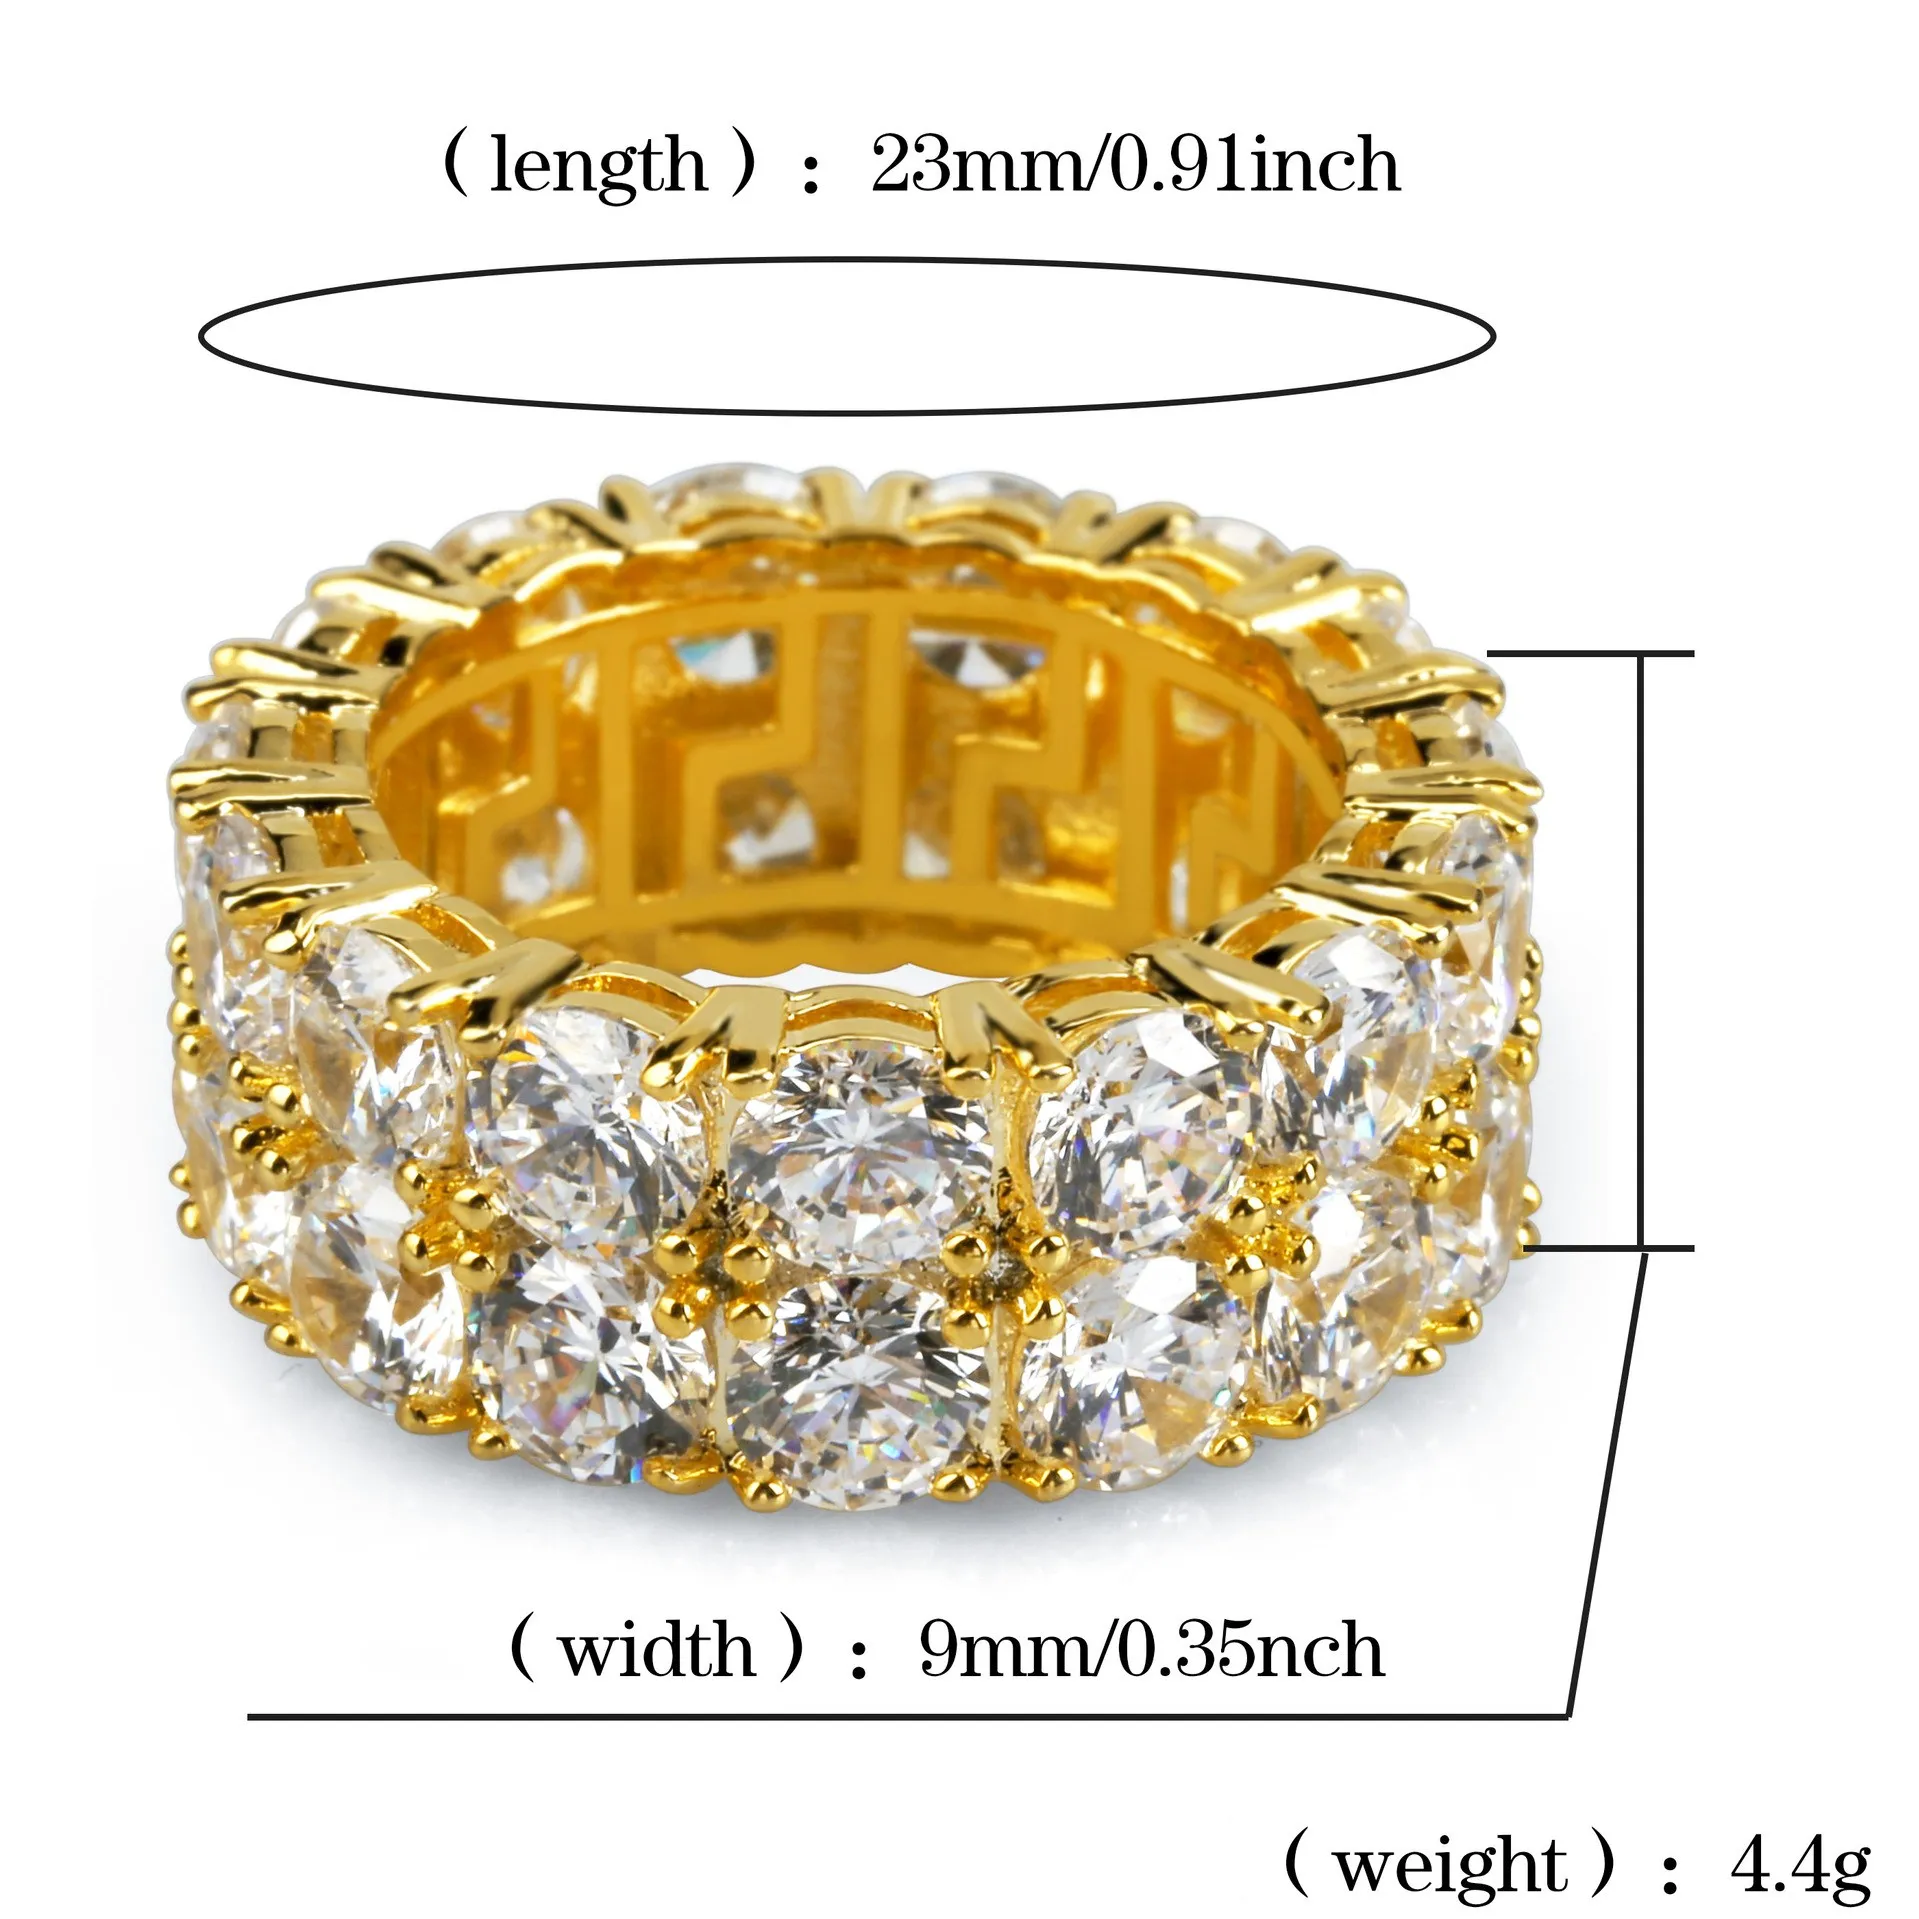 7-12 Złoty srebrny kolor platowane pierścienie mikro utwardzone 2 rzędowe pierścień tenisowy Pierścień z palec Hip Hop For Men